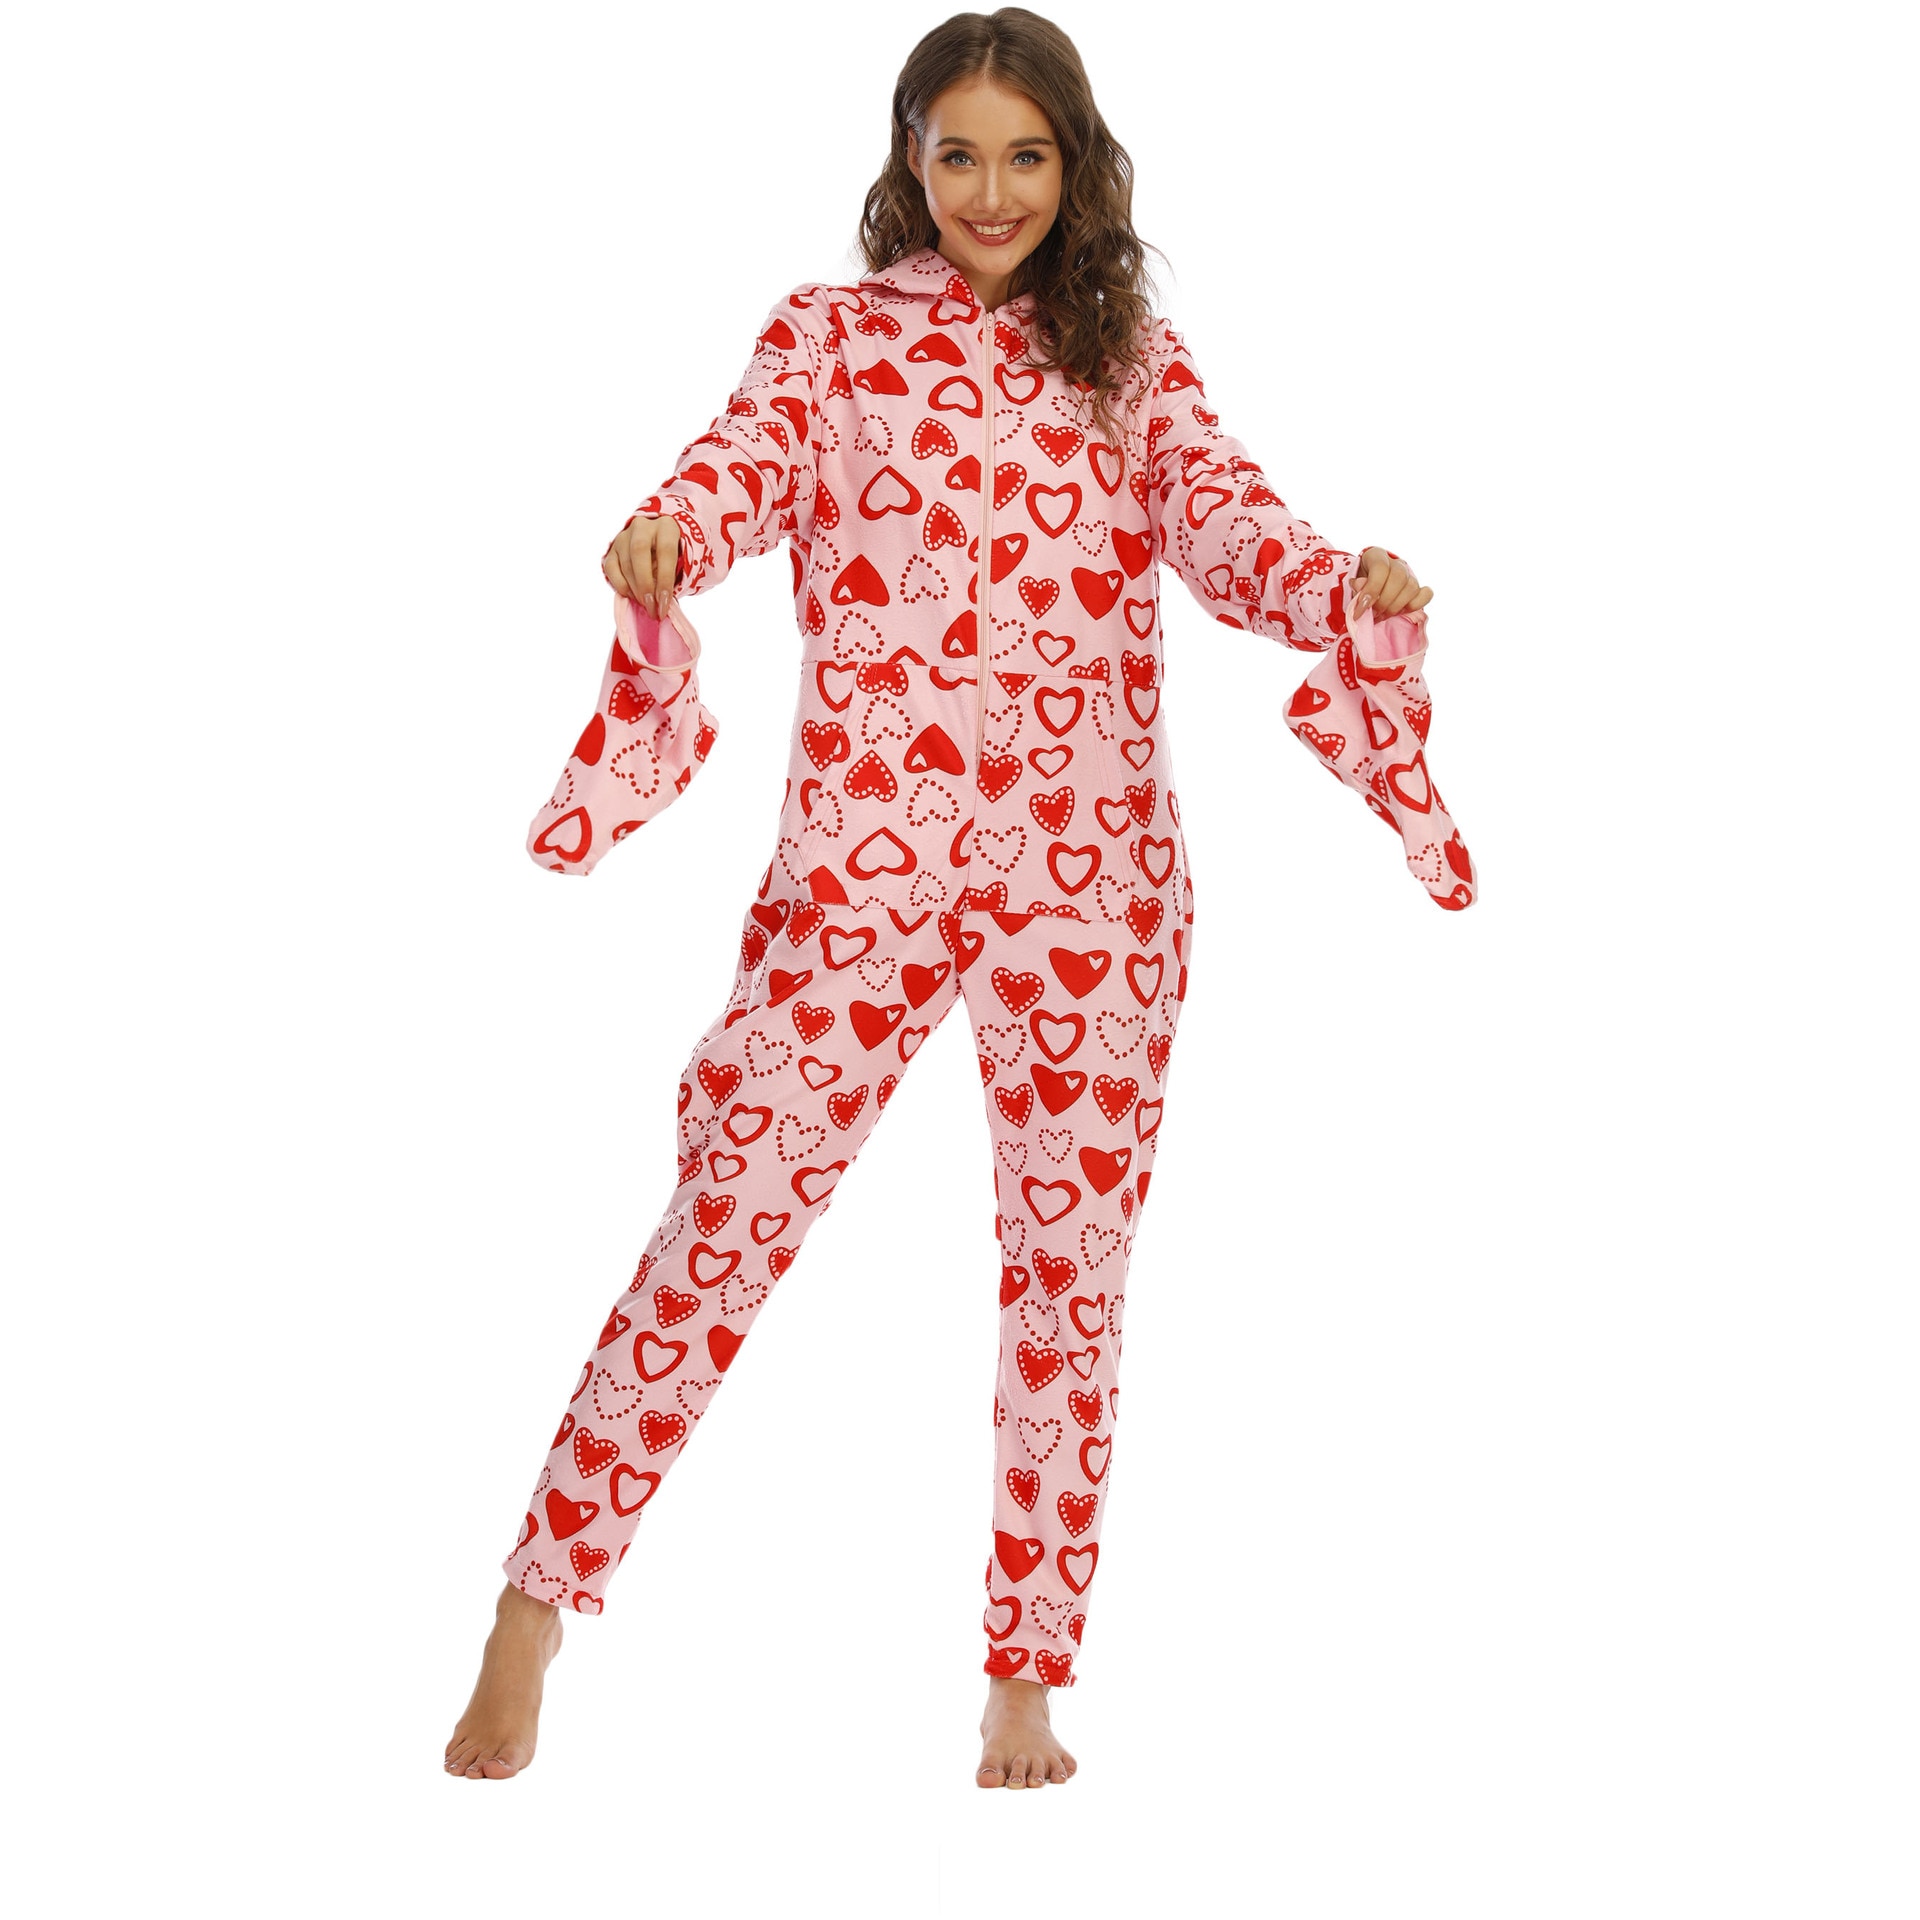 Women Pajamas Polar Fleece Jumpsuit Zipper Hooded Onesie Sleepwear Love Print Nightgown Pink Red With Foot Cover Rompers Pyjamas